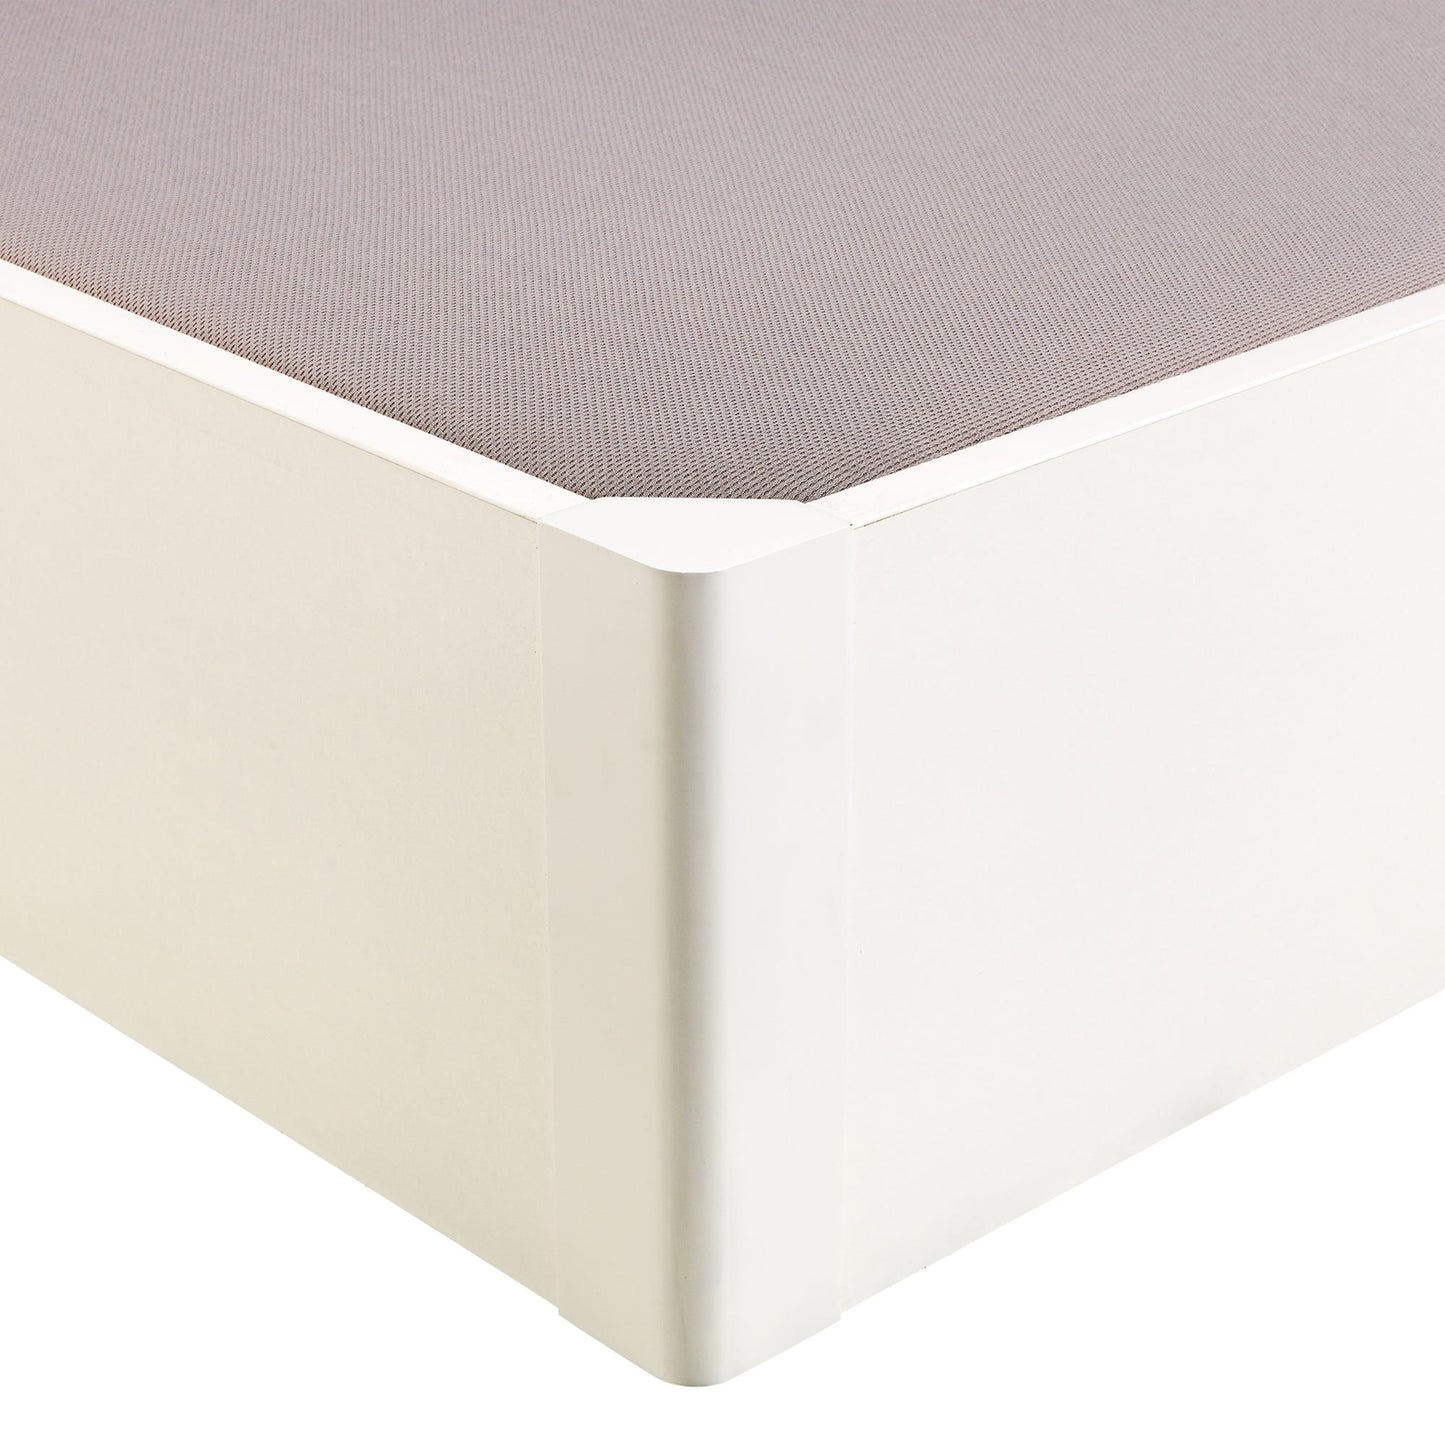 Canapé abatible de madera tapa única de color blanco - DESIGN - 160x182